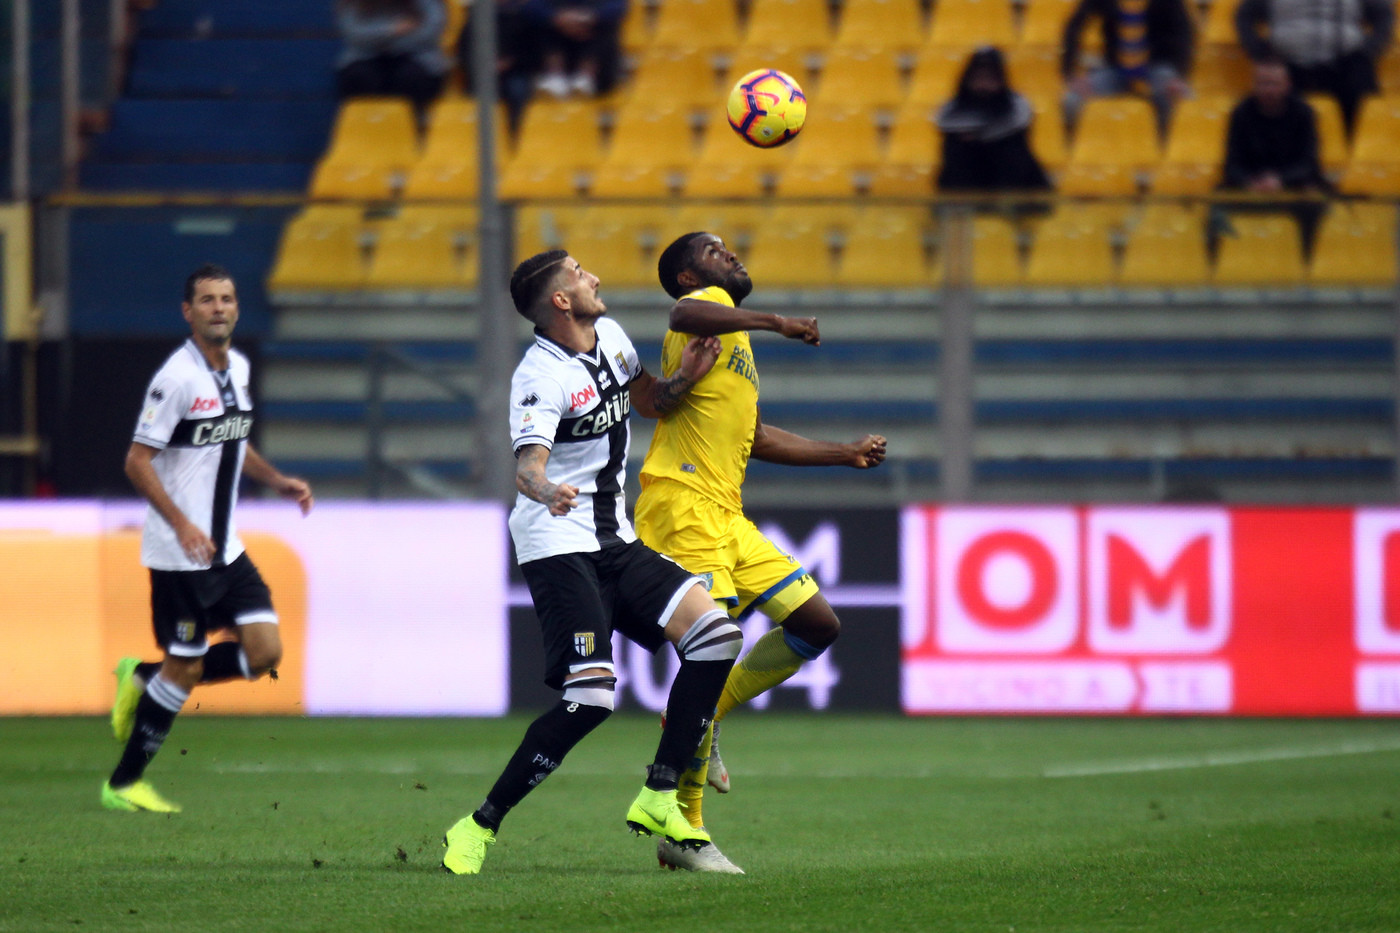 Serie A, Parma-Frosinone 0-0 | Il fotoracconto